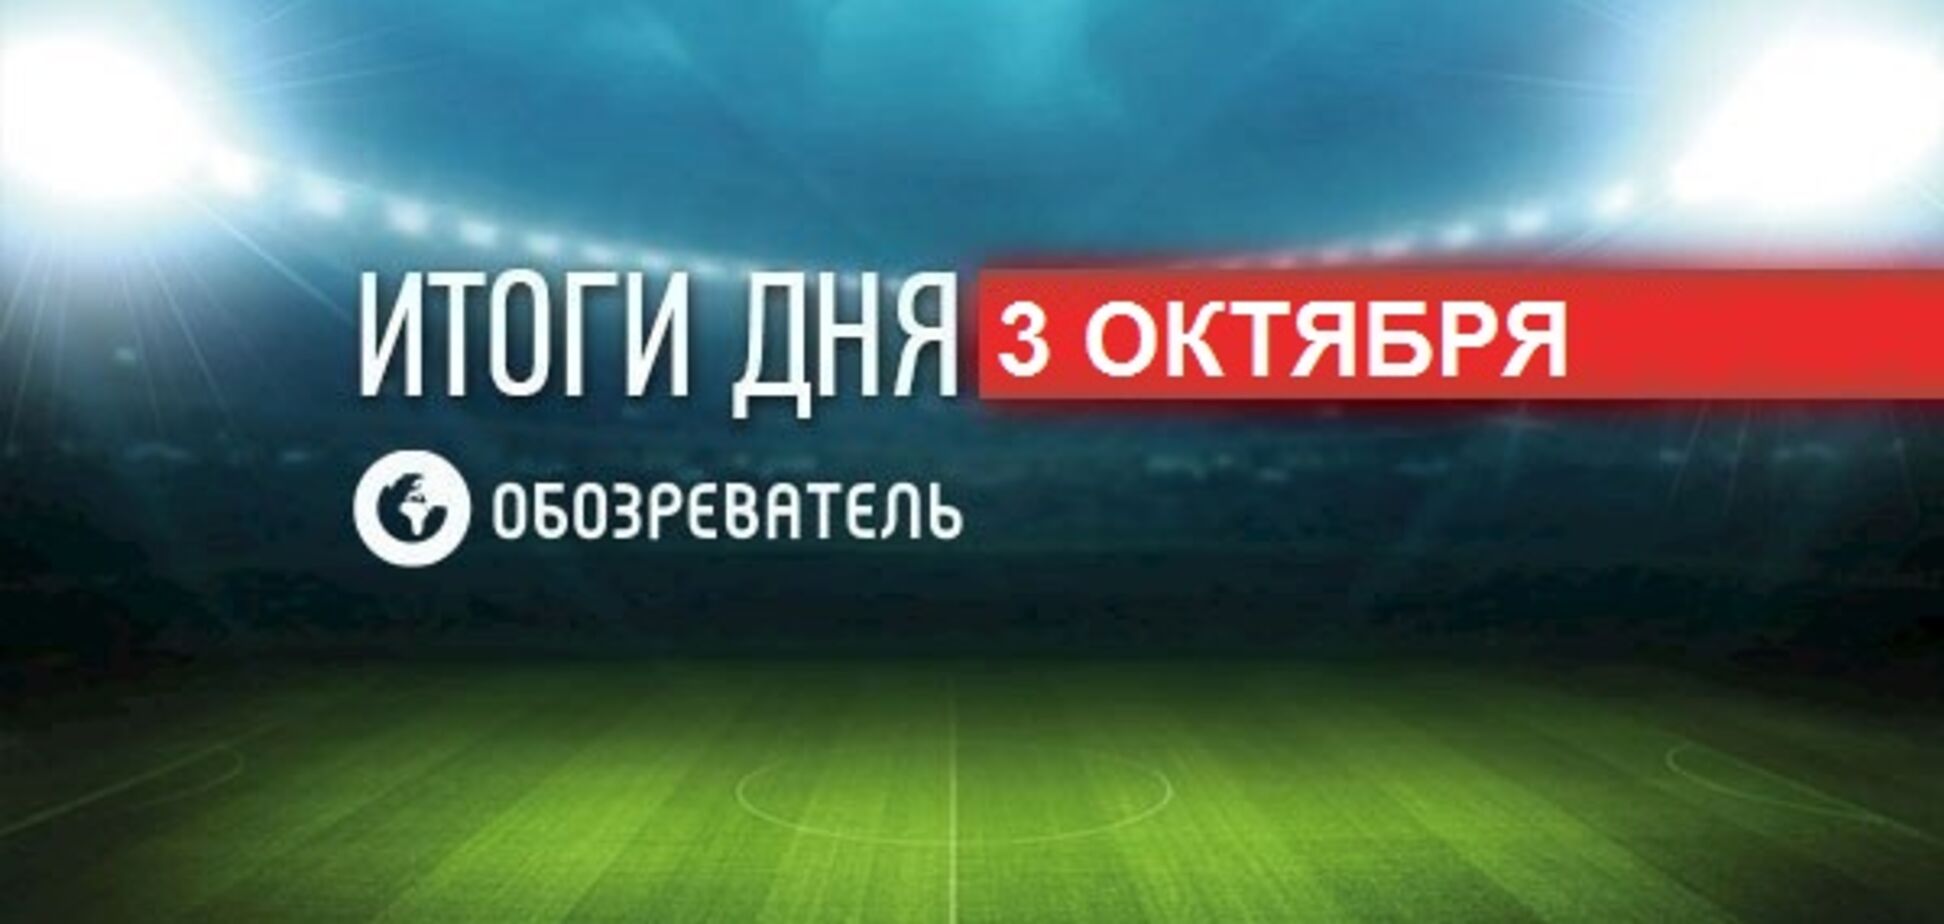 Фанаты 'Динамо' объявили о бойкоте матча сборной Украины: спортивные итоги 3 октября